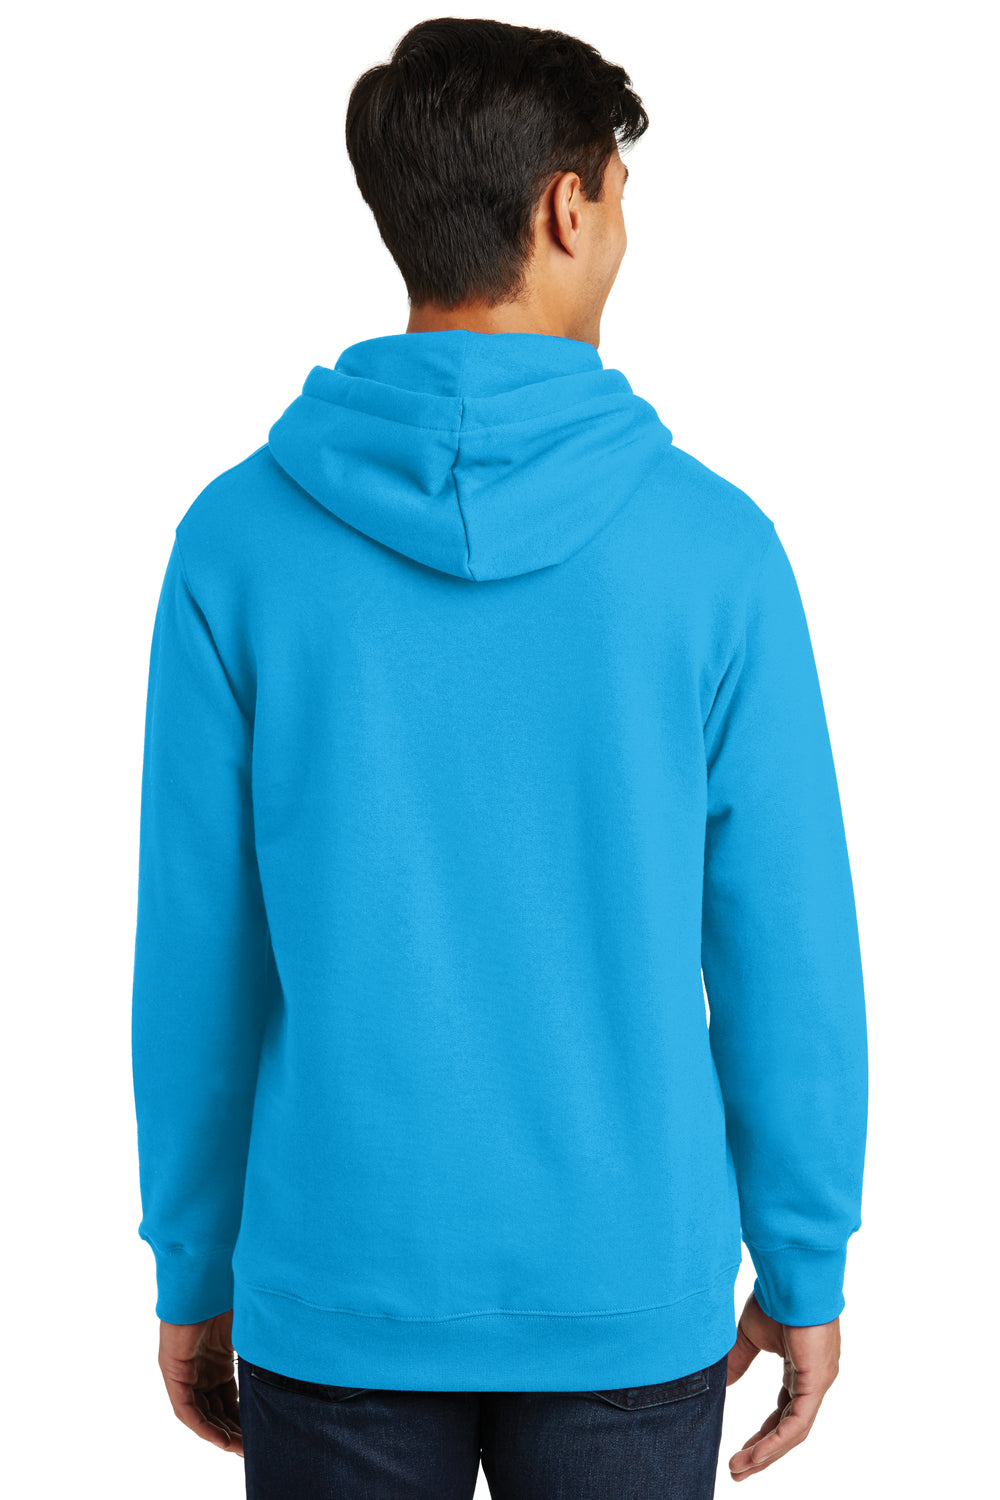 Port & Company PC850H Mens Fan Favorite Fleece Hooded Sweatshirt Hoodie Sapphire Blue Back